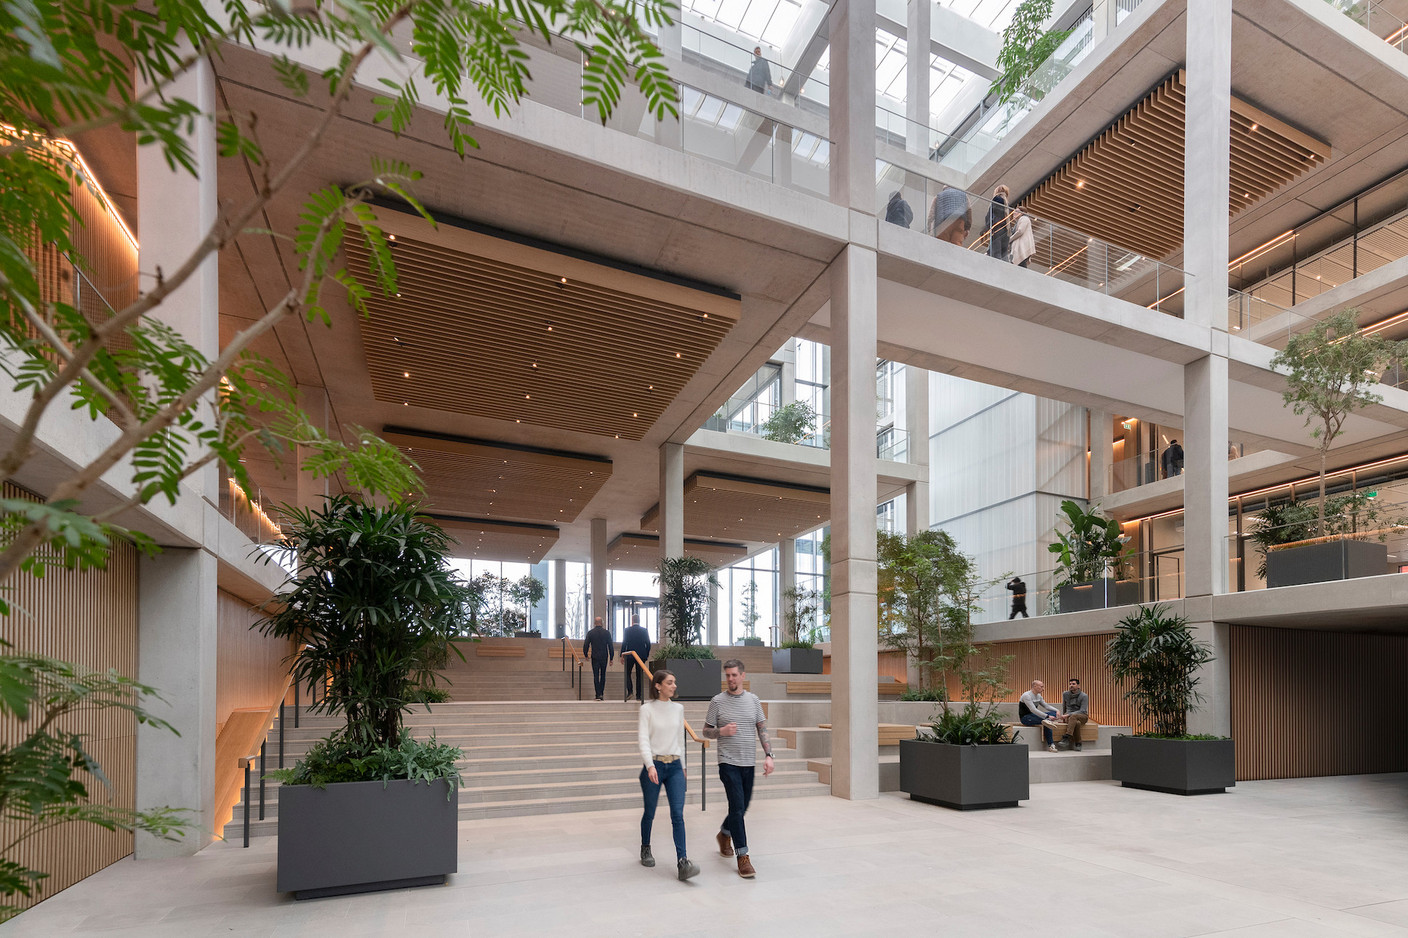 Au rez-de-chaussée de l’atrium, les escaliers permettent d’absorber la différence de niveau entre la place de France et la place de l’Académie. (Photo: Nigel Young/Foster + Partners)